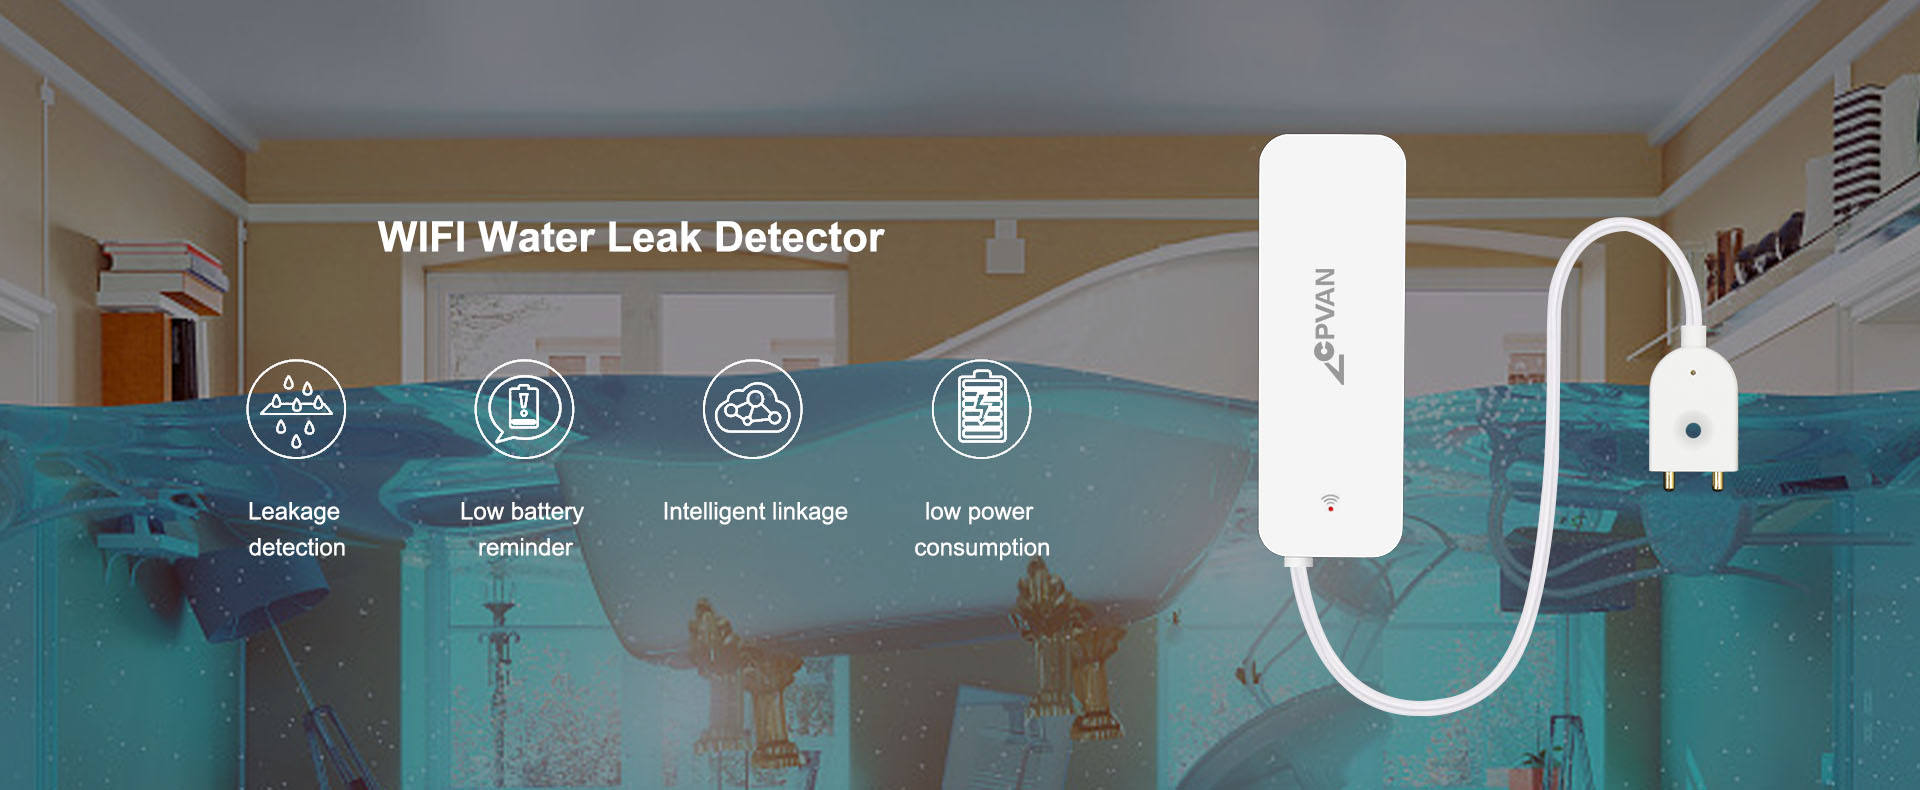 WIFI Water Leak Sensor